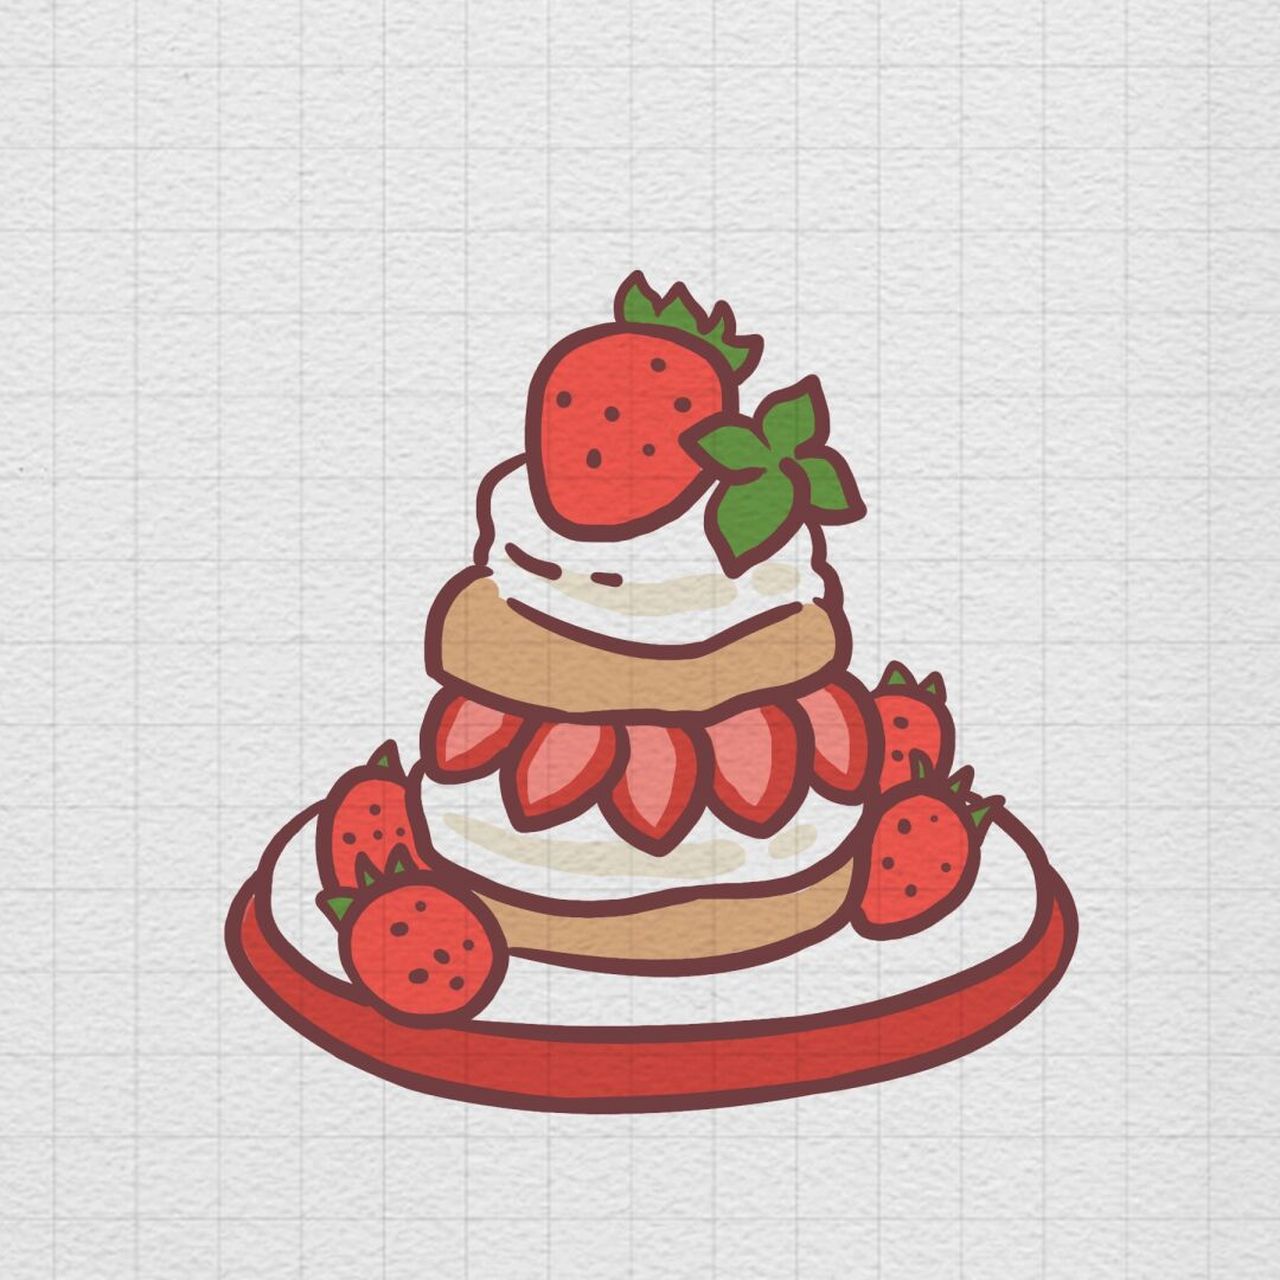 草莓蛋糕简笔画 步骤图片